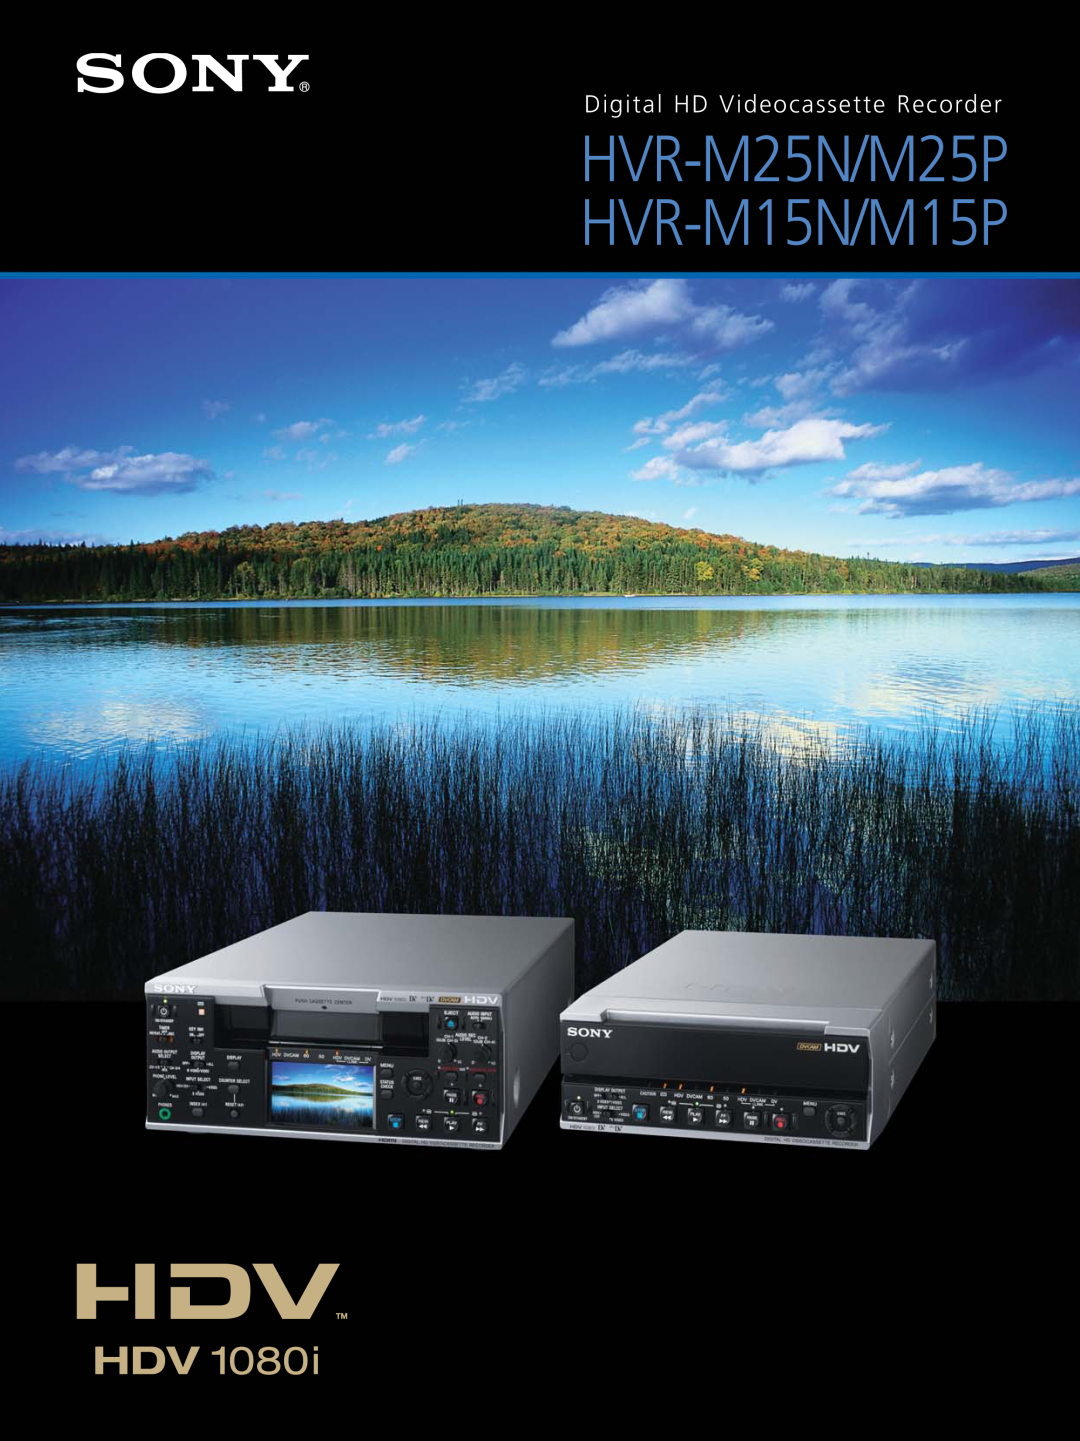 Sony manual HVR-M25N/M25P HVR-M15N/M15P, Digital HD Videocassette Recorder 